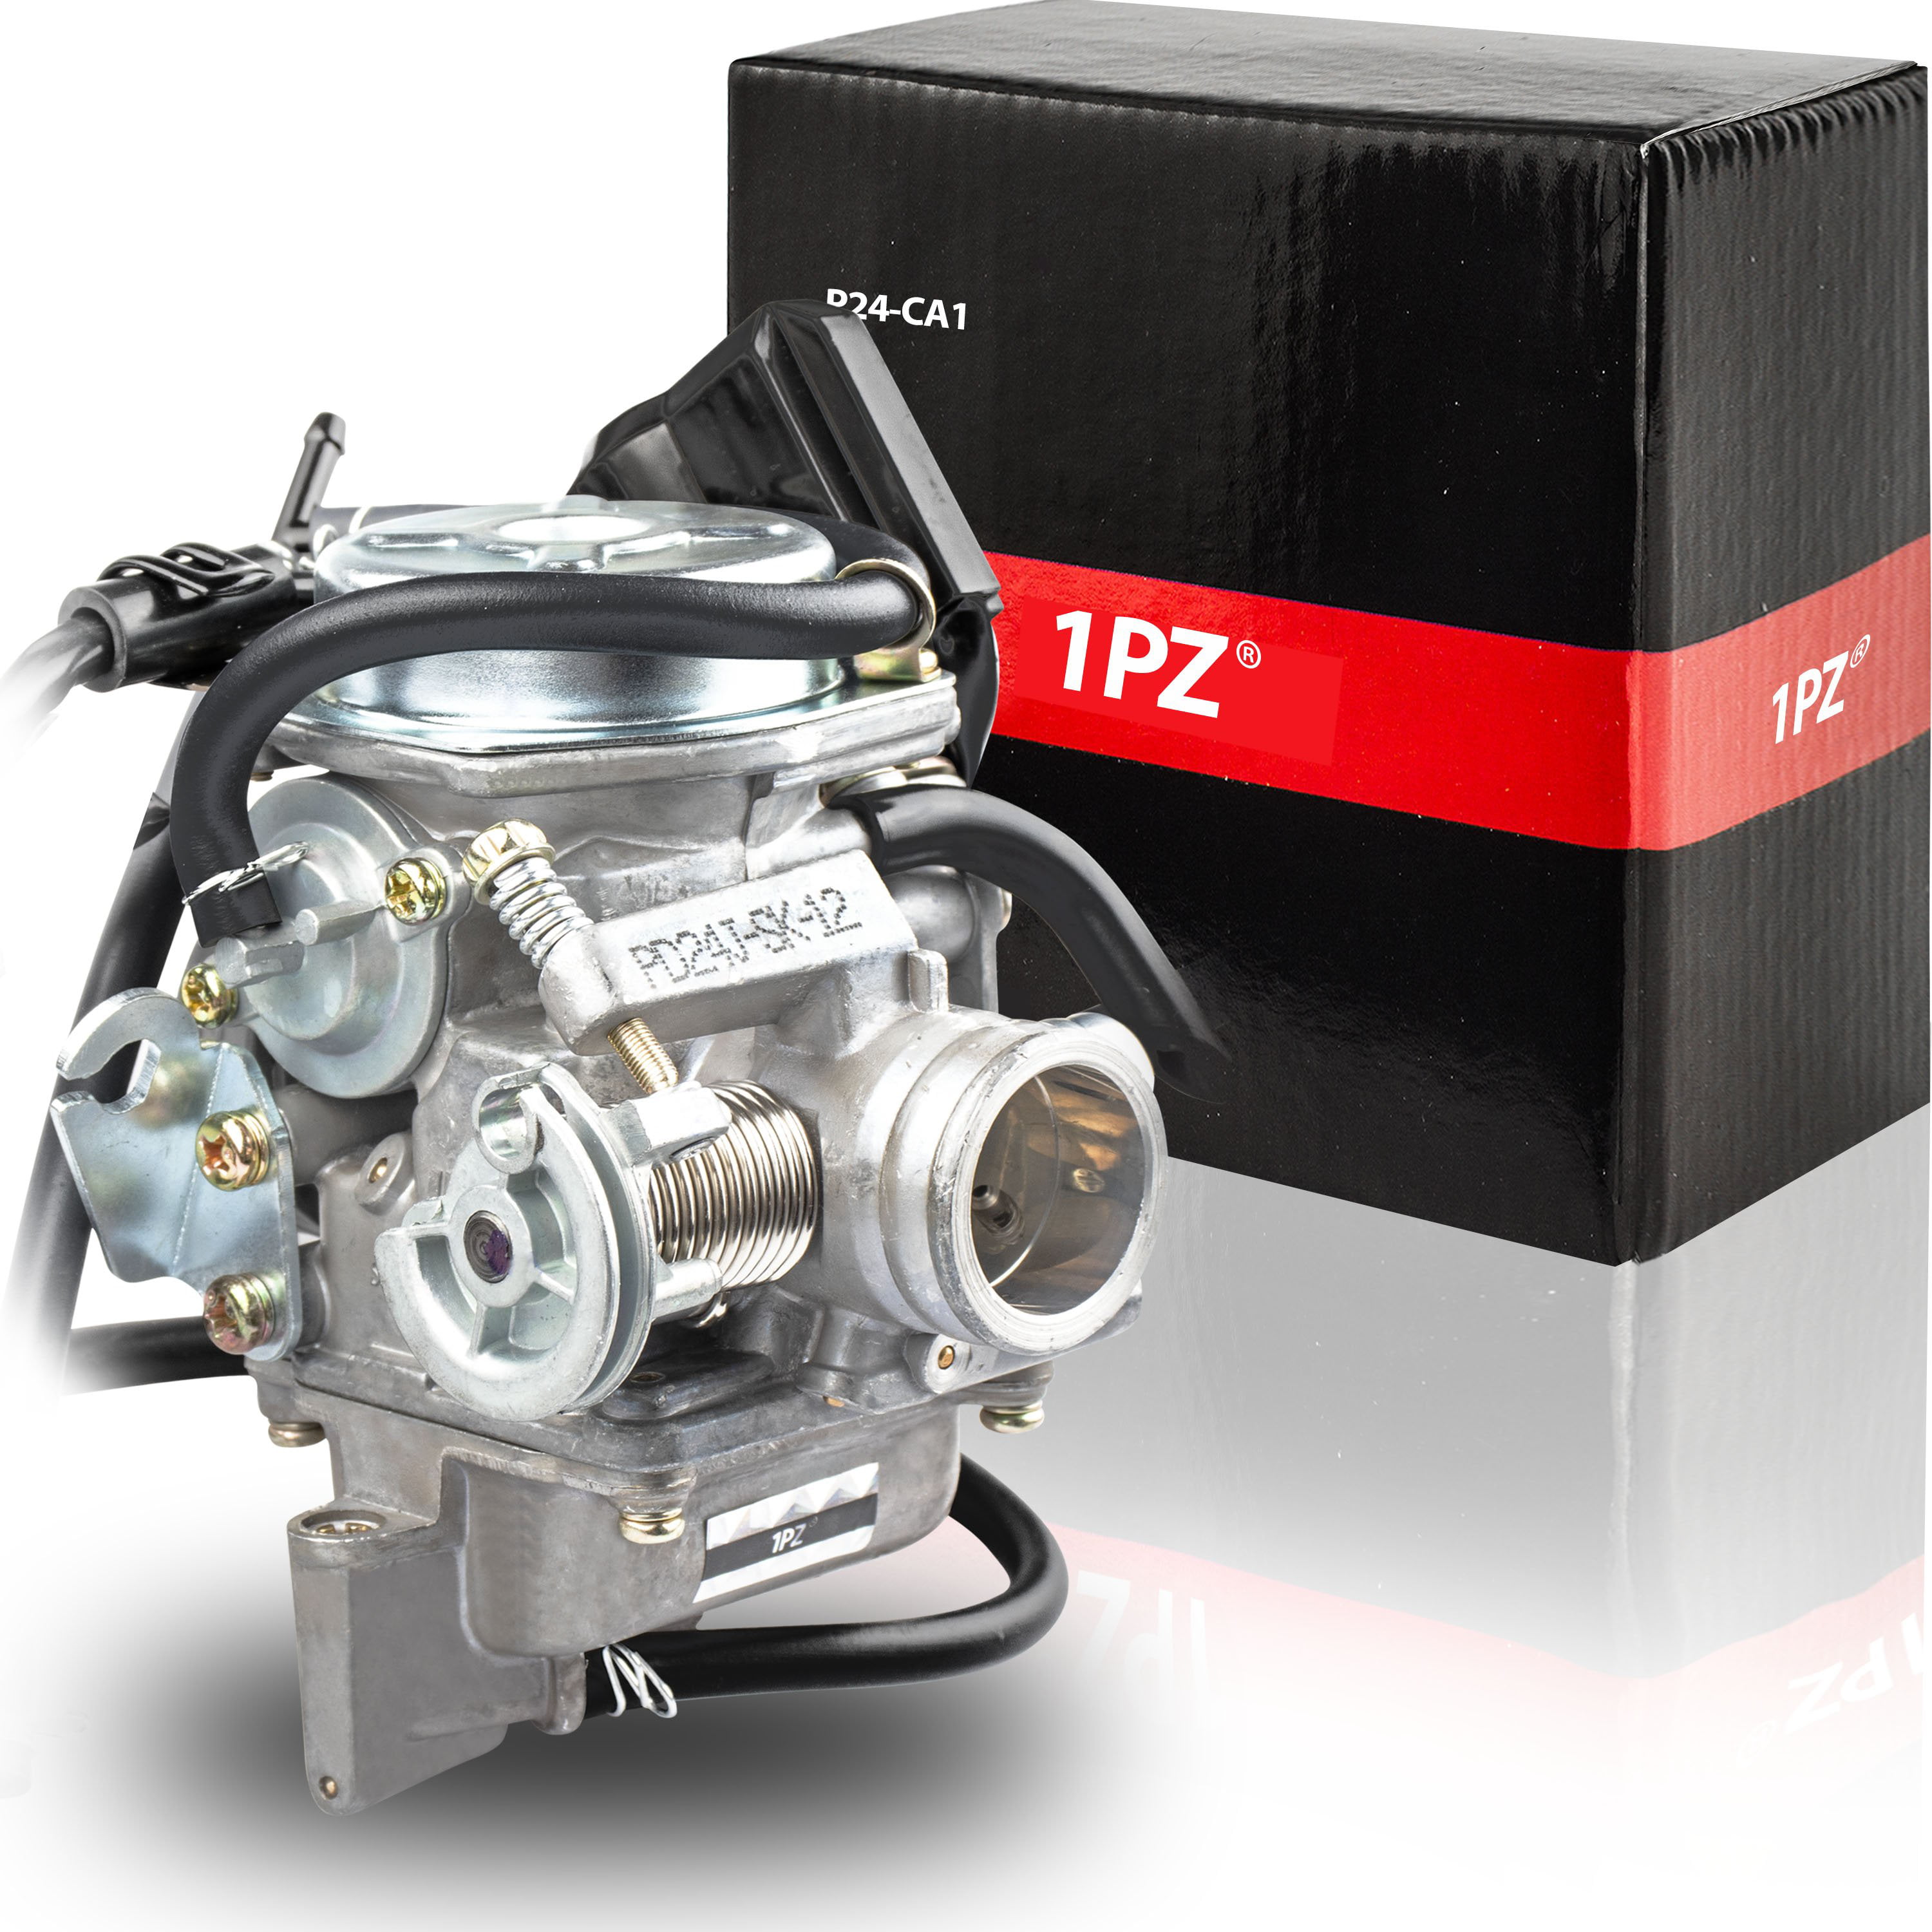 GY6 150cc Engine Starter Idle Gear pour cyclomoteur gaz Scooters Motor 152QMI 157QMJ